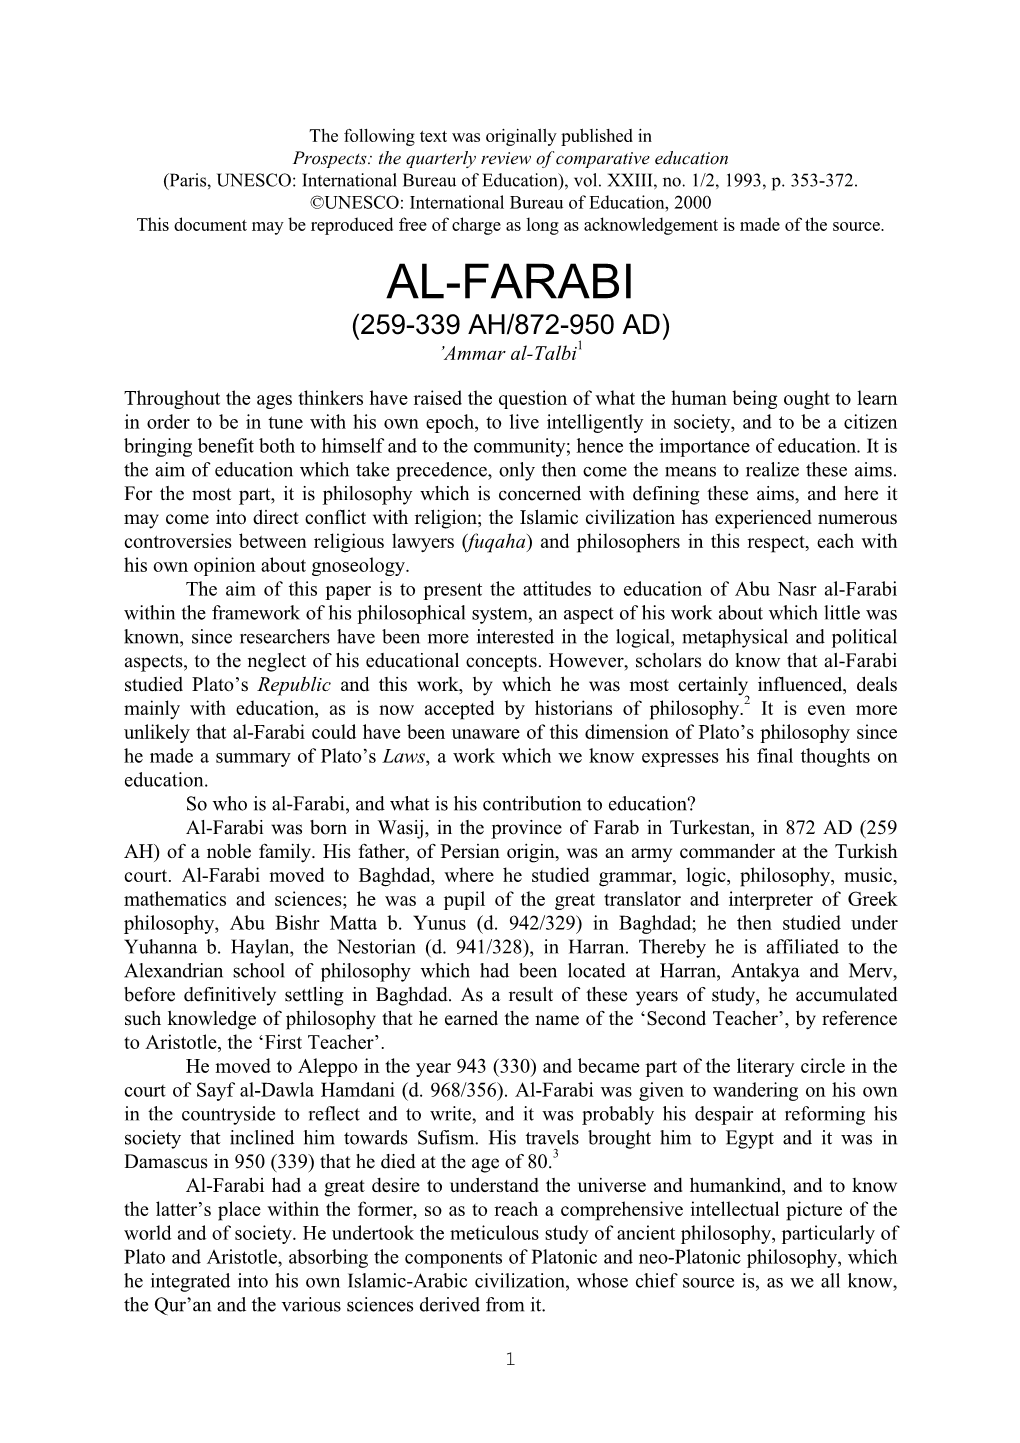 AL-FARABI (259-339 AH/872-950 AD) ’Ammar Al-Talbi1